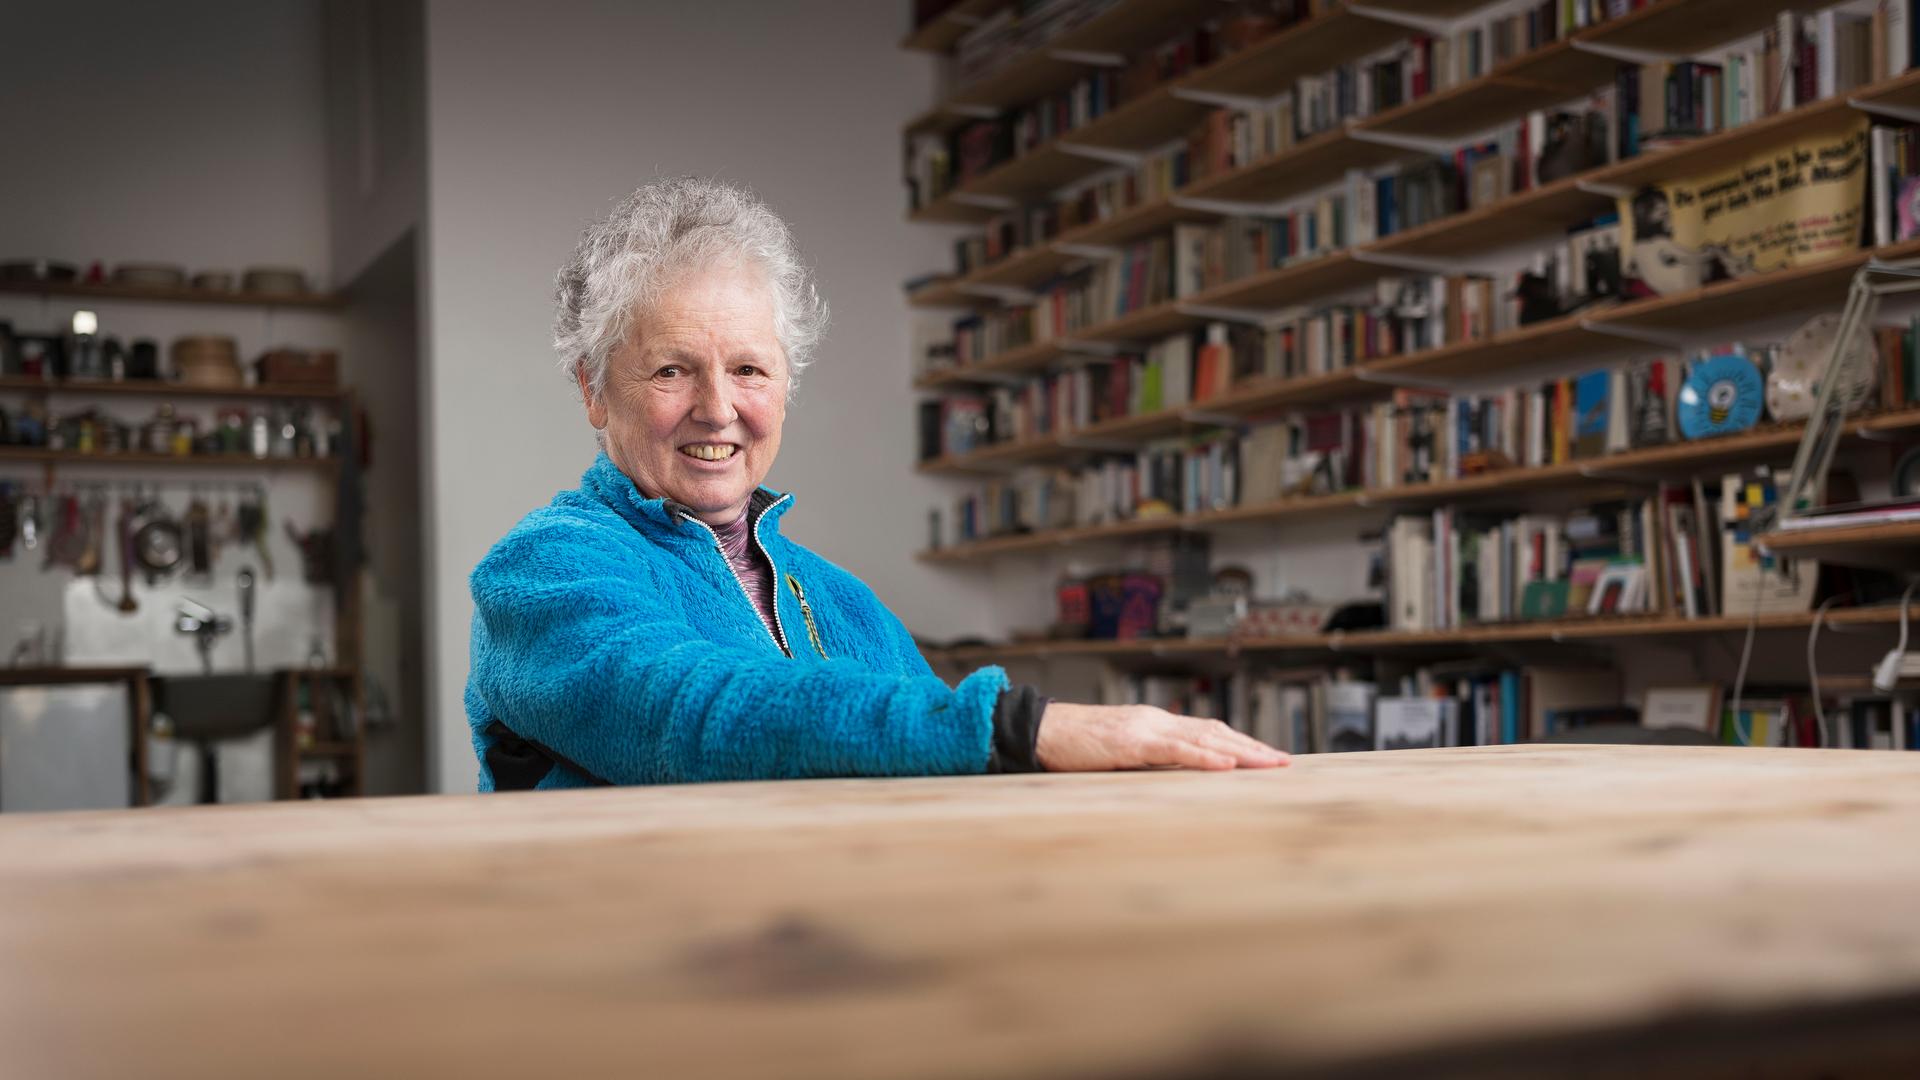 Die Künstlerin Miriam Cahn sitzt an einem Tisch und lächelt in die Kamera. Sie hat graue Haare und trägt eine blaue Jacke. Im Hintergrund sind lange Bücherregale zu sehen.